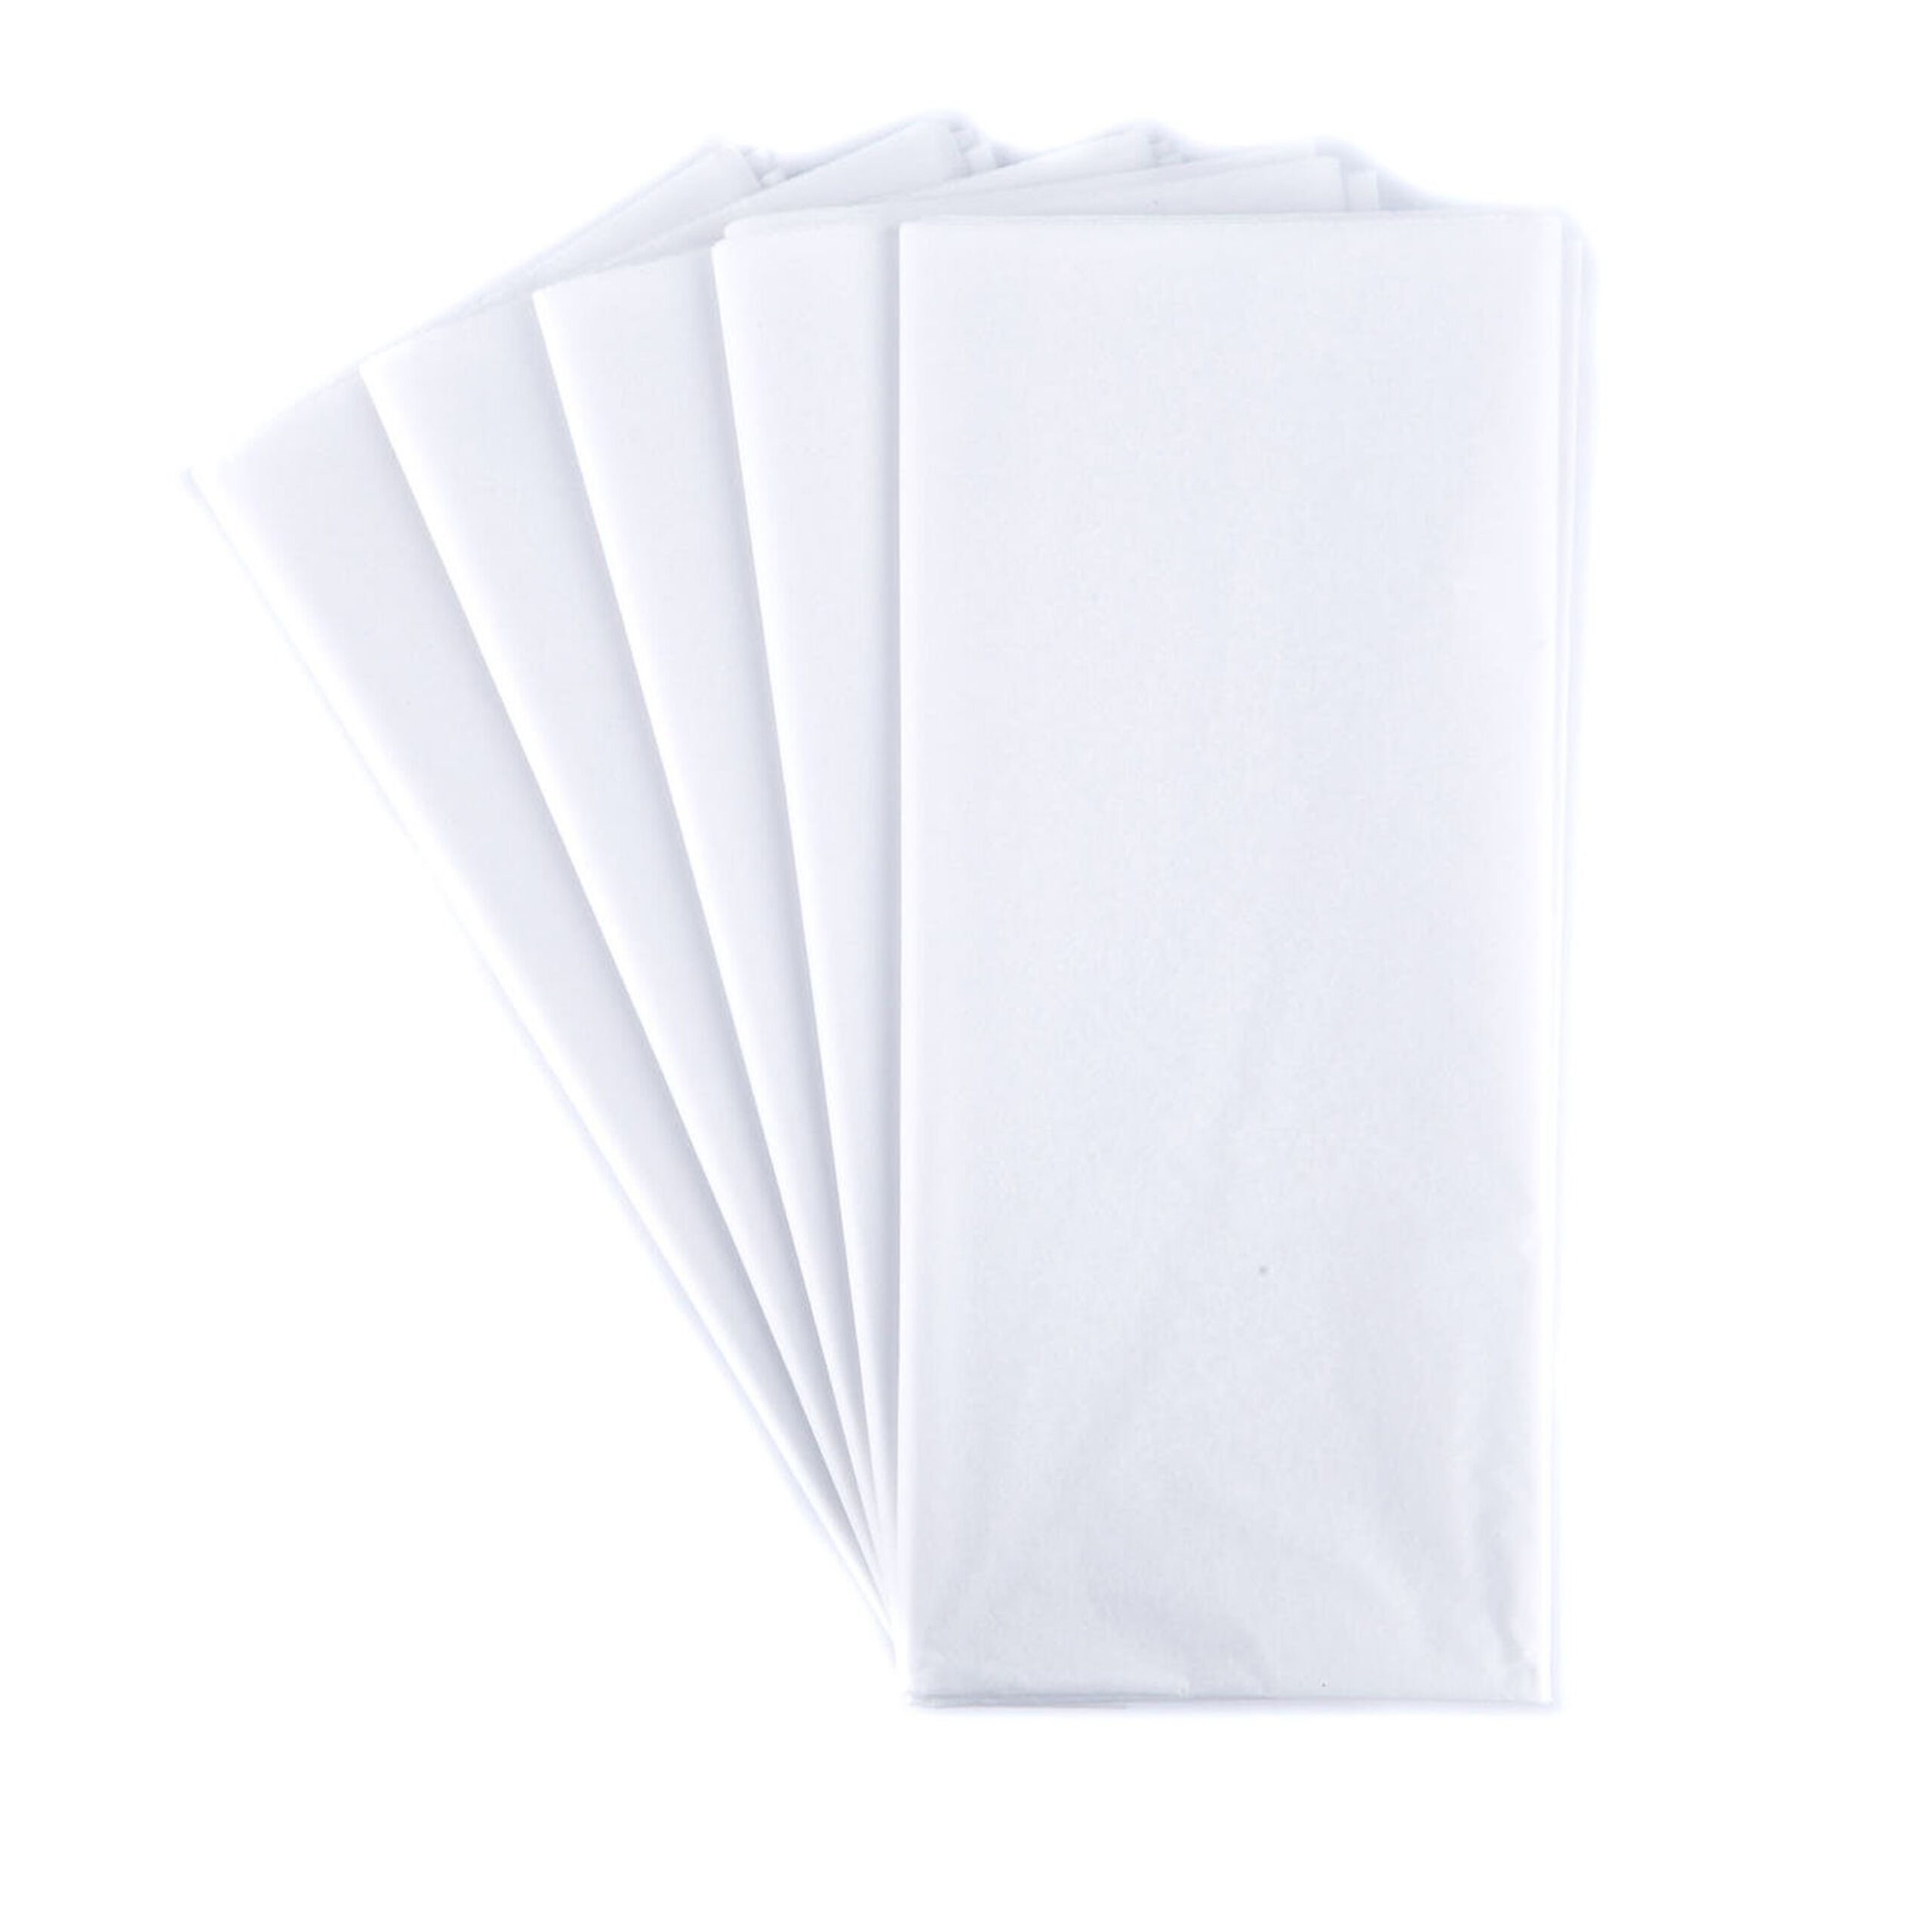 TISSUE PAPER
WHITE 10 SHEETS
50x66cm